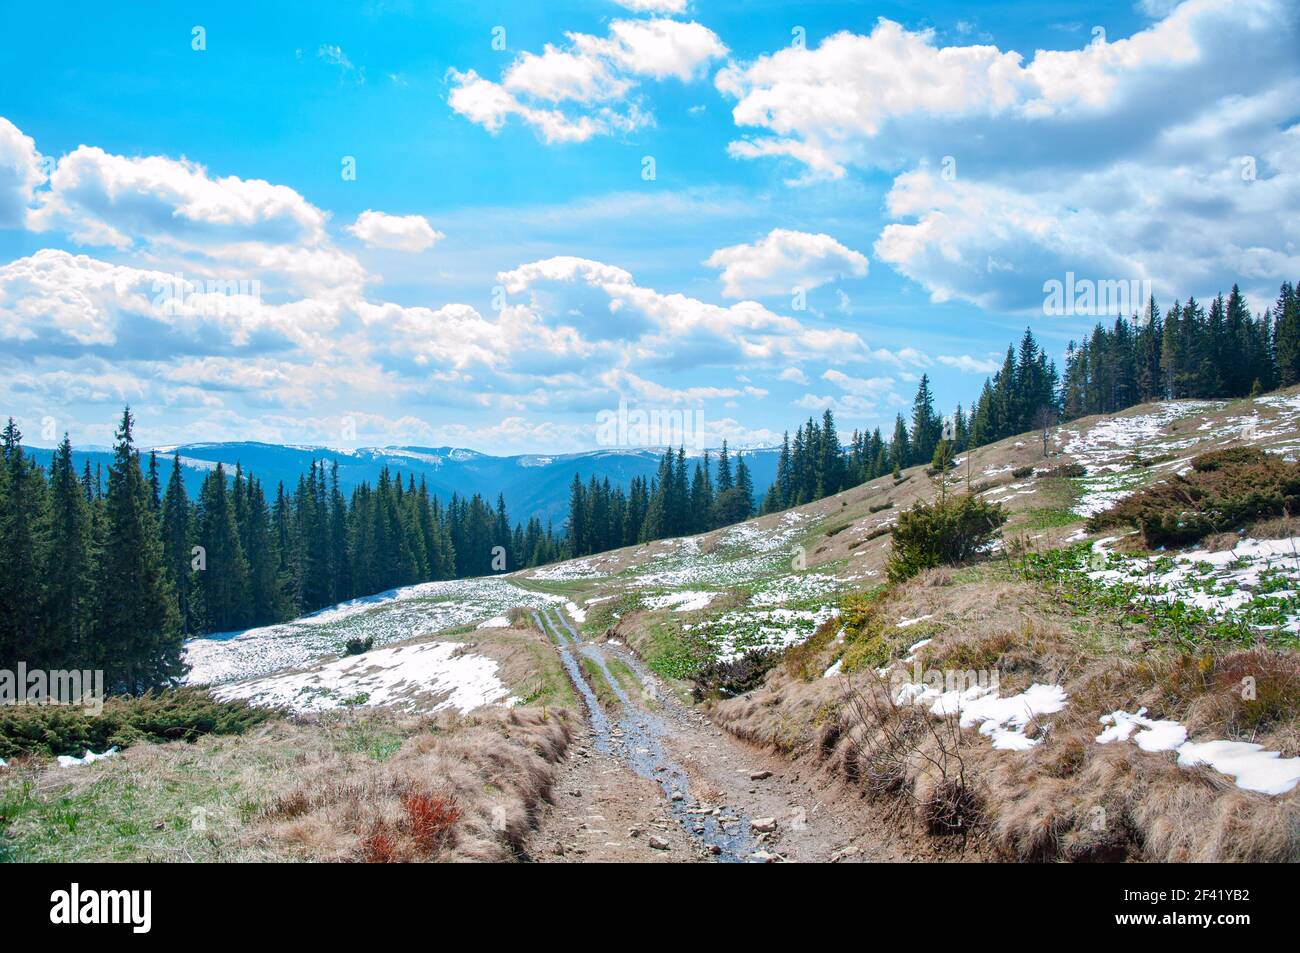 Paysage de printemps avec montagnes, forêt d'épinette verte et ciel bleu avec nuages Banque D'Images